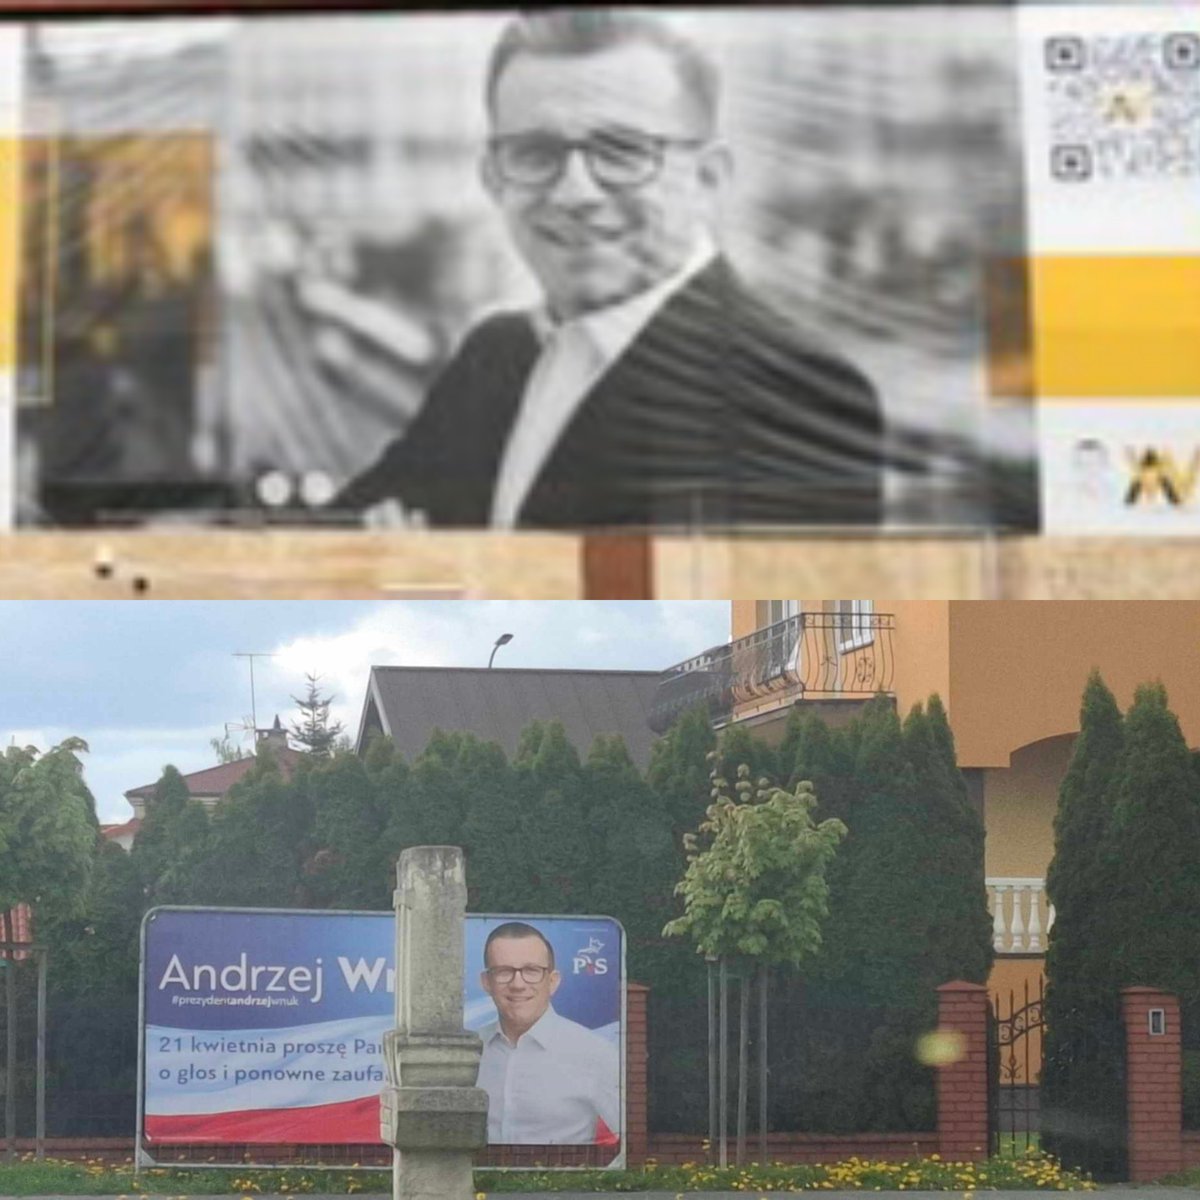 Taki był żółciutki w 1 turze @pisorgpl 
dla Andrzeja Wnuk był be.
Jak wtopił z Rafał Zwołak 40:26 to już w drugiej cały pisowski #Pis 
#Pisobłuda #Wybory 
#Zamość #Lubelskie